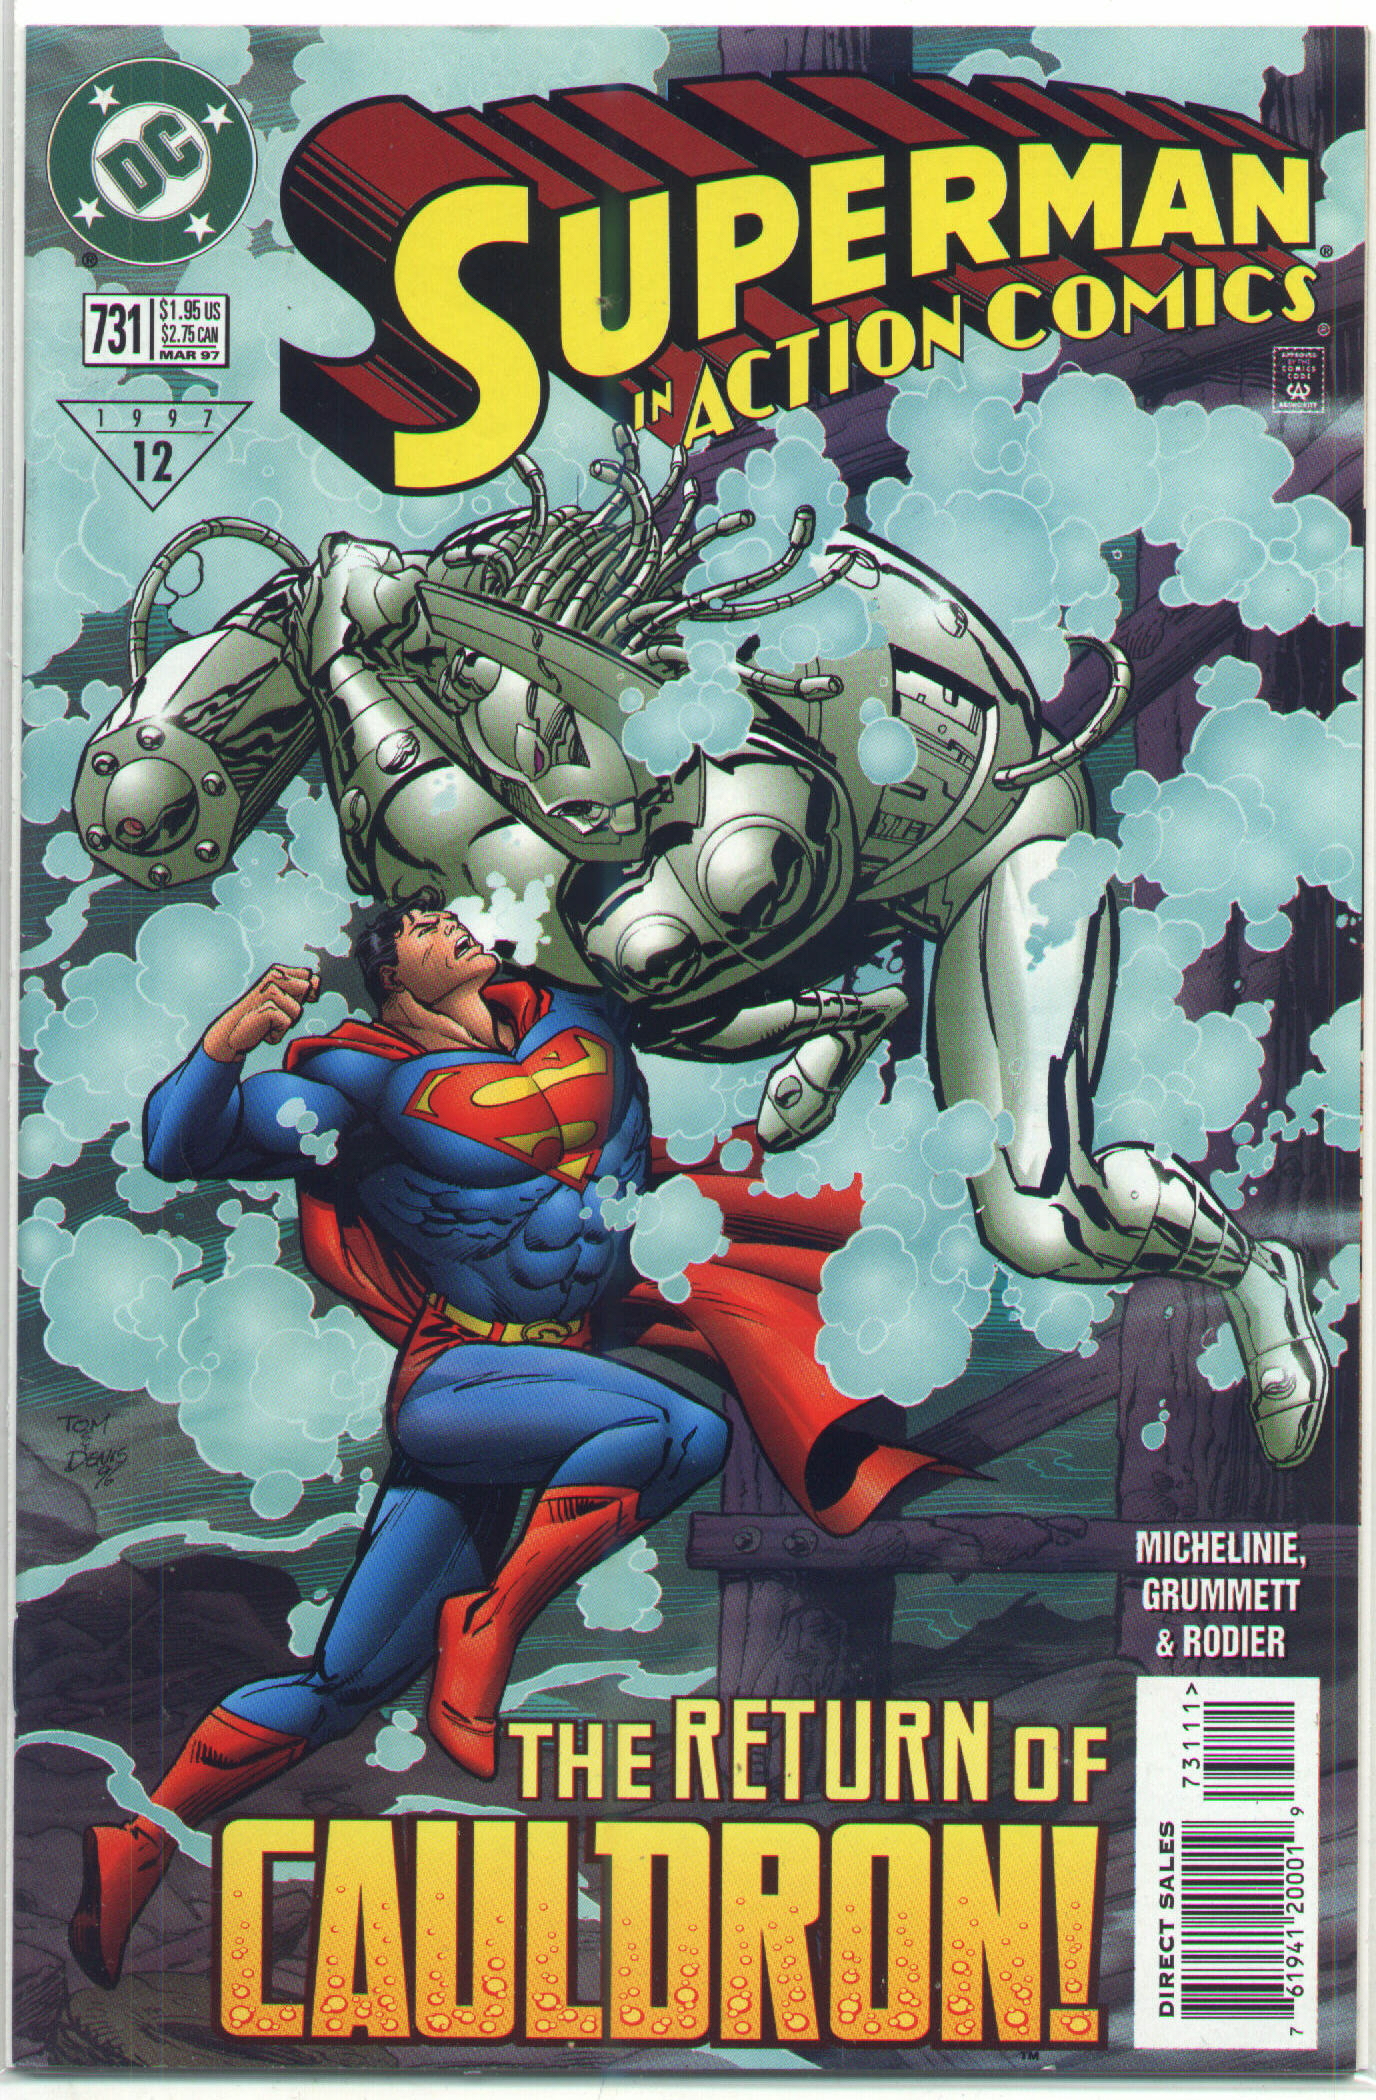 Action Comics Vol. 1 #731